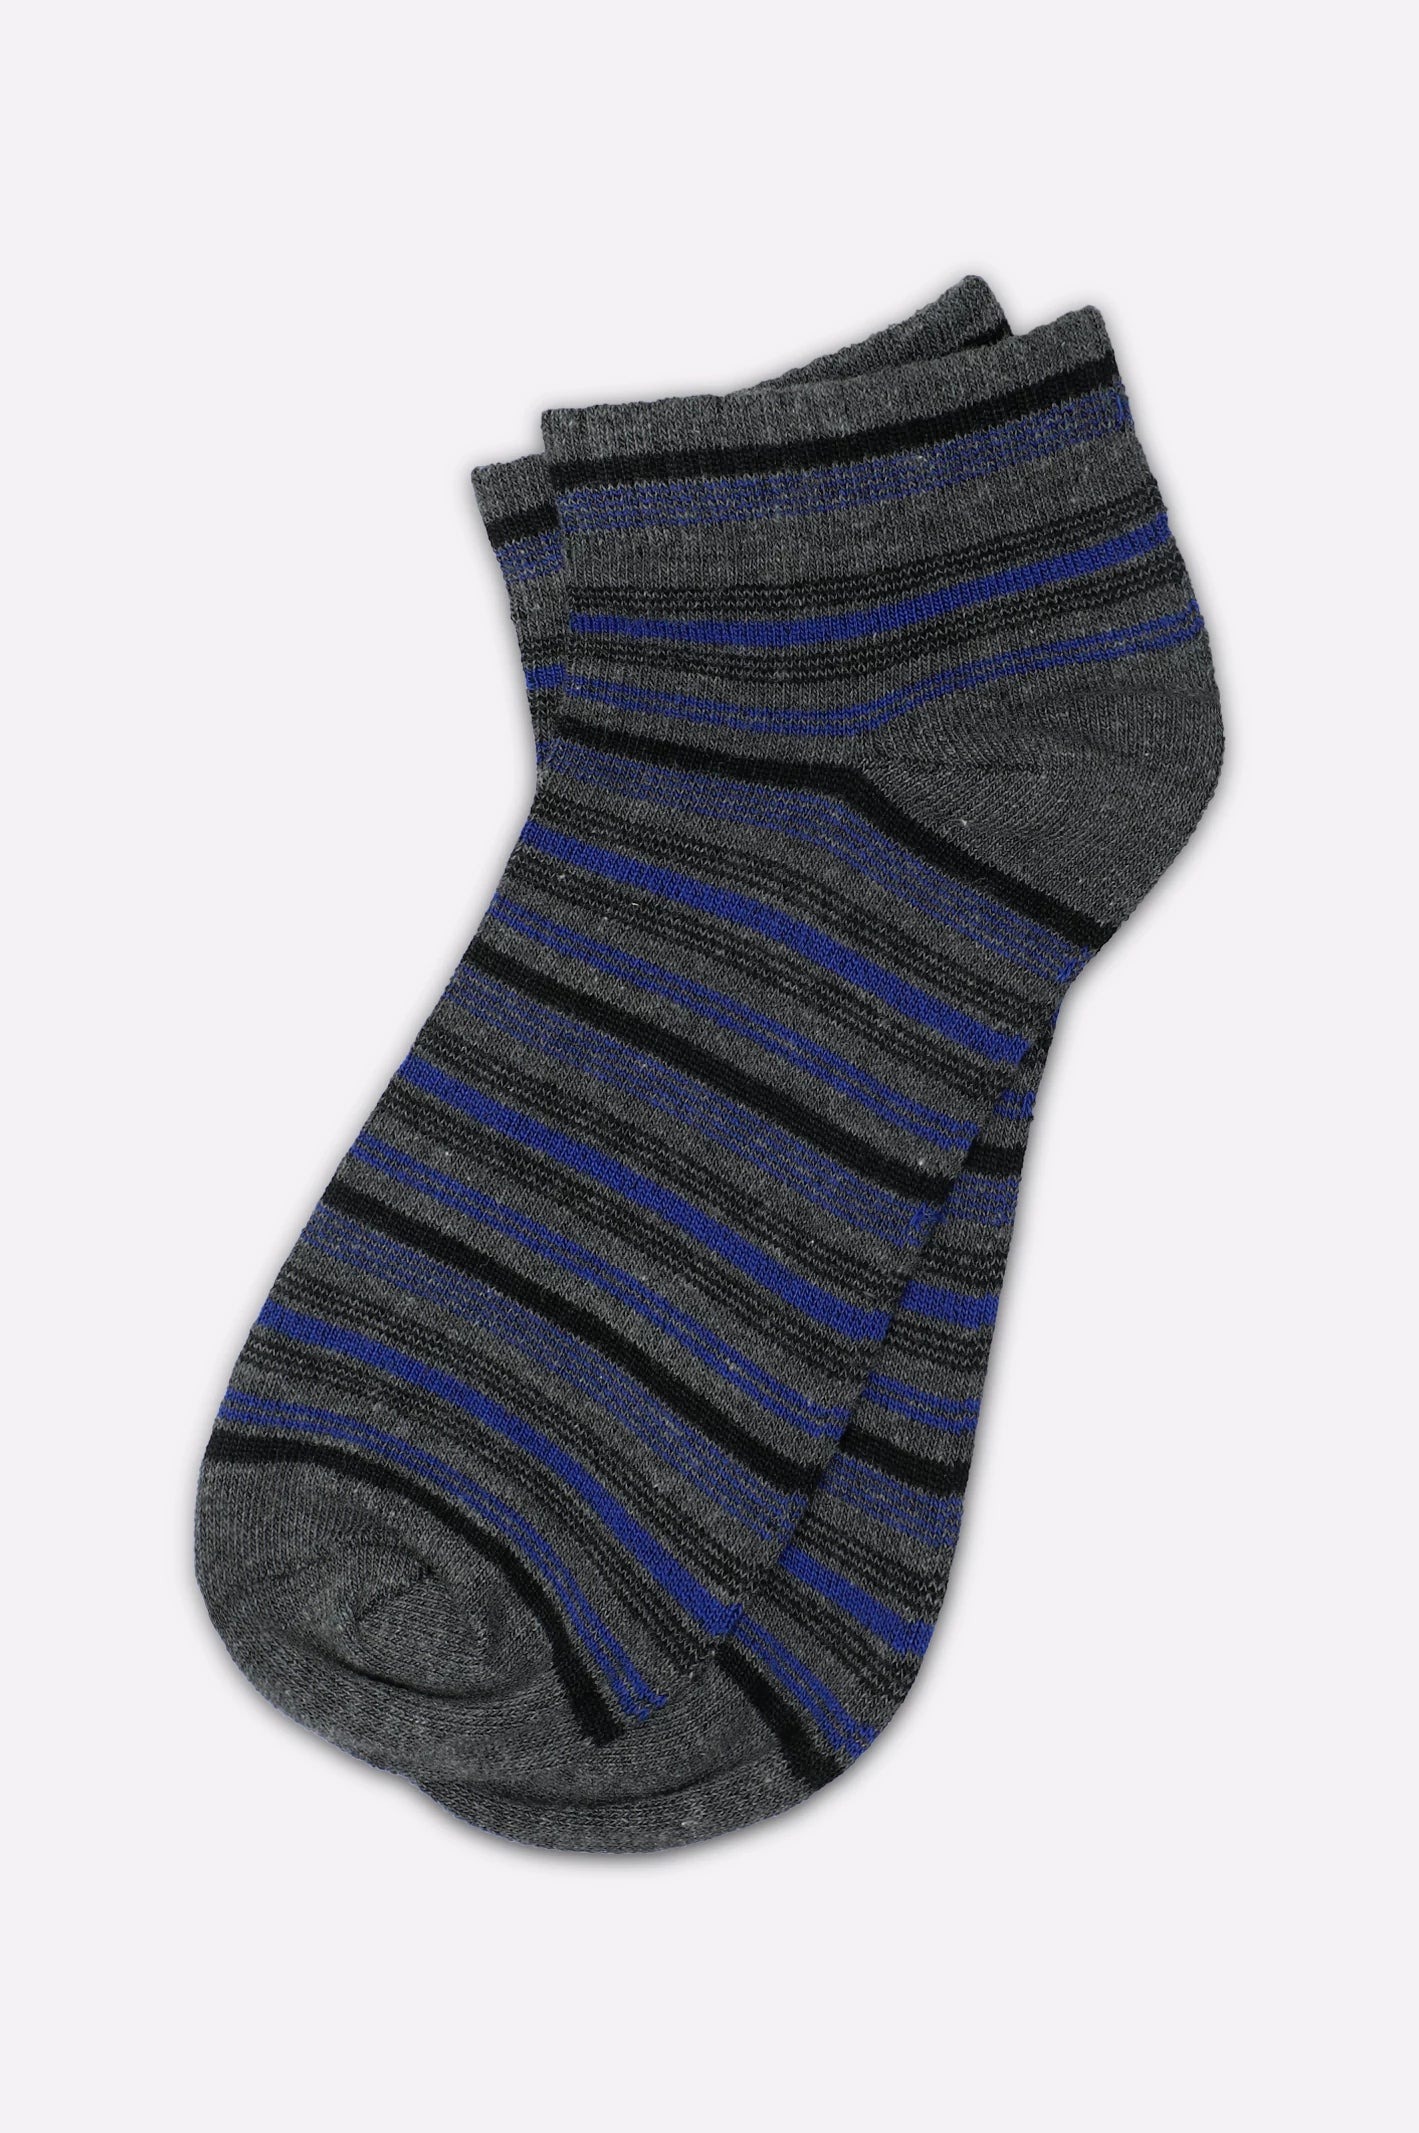 
Dark-Grey-Ankle-Socks